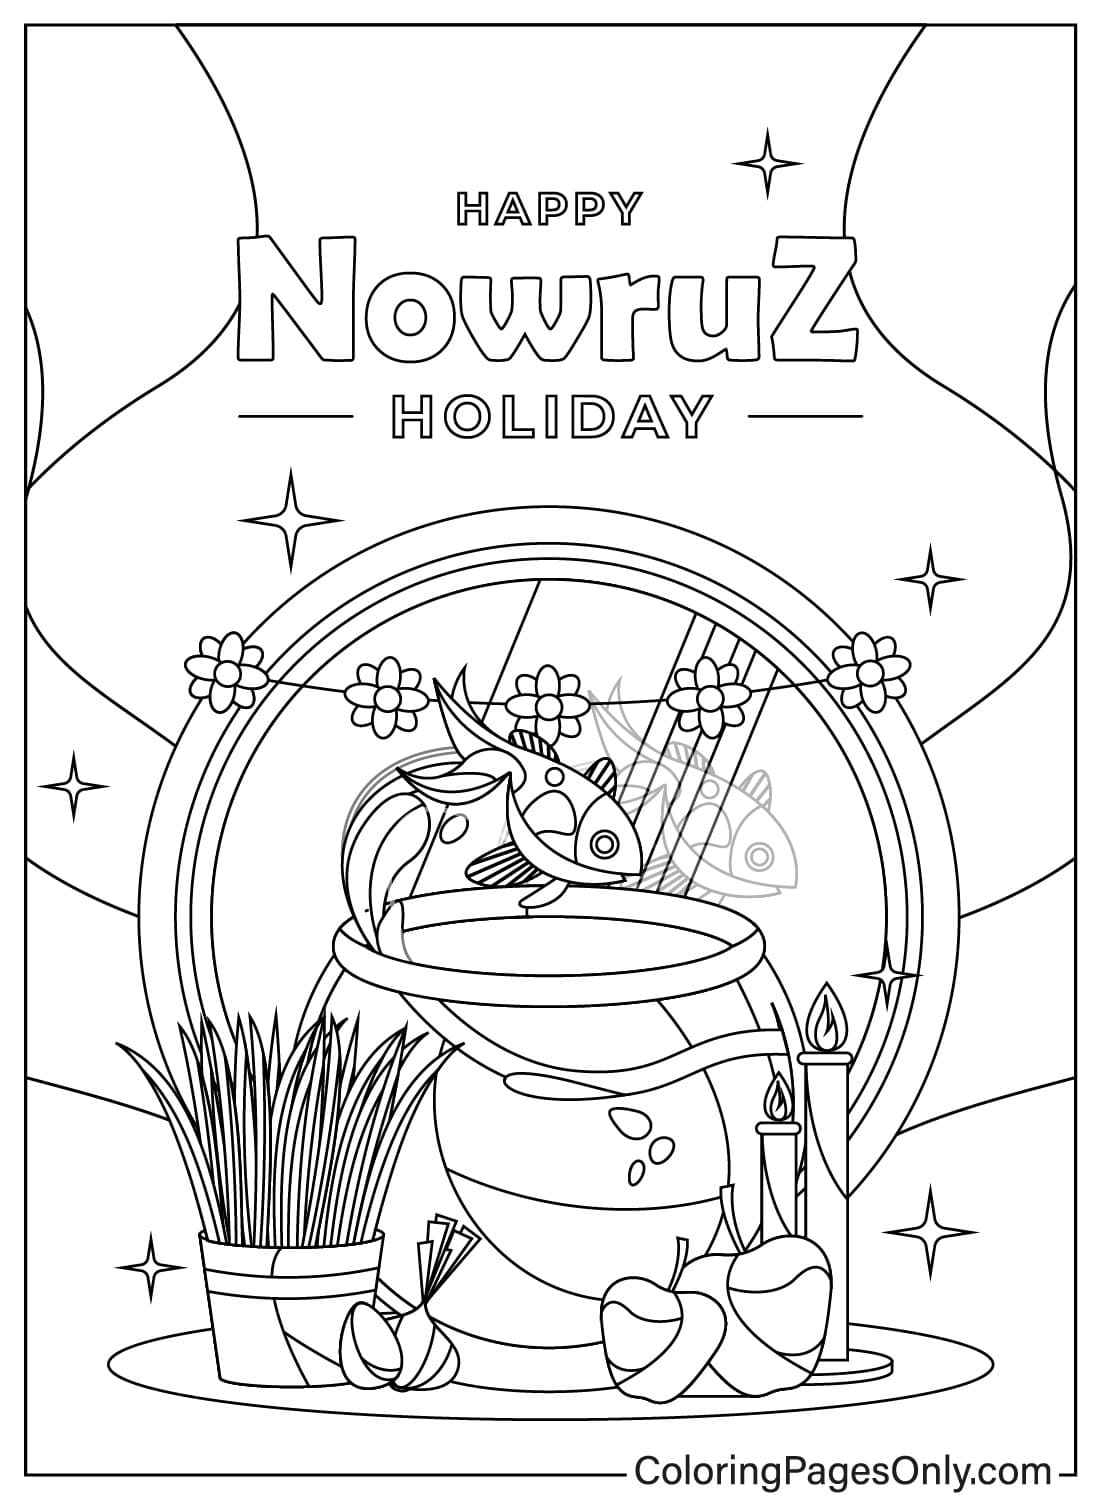 Foglio da colorare per la Giornata internazionale del Nowruz dalla Giornata internazionale del Nowruz